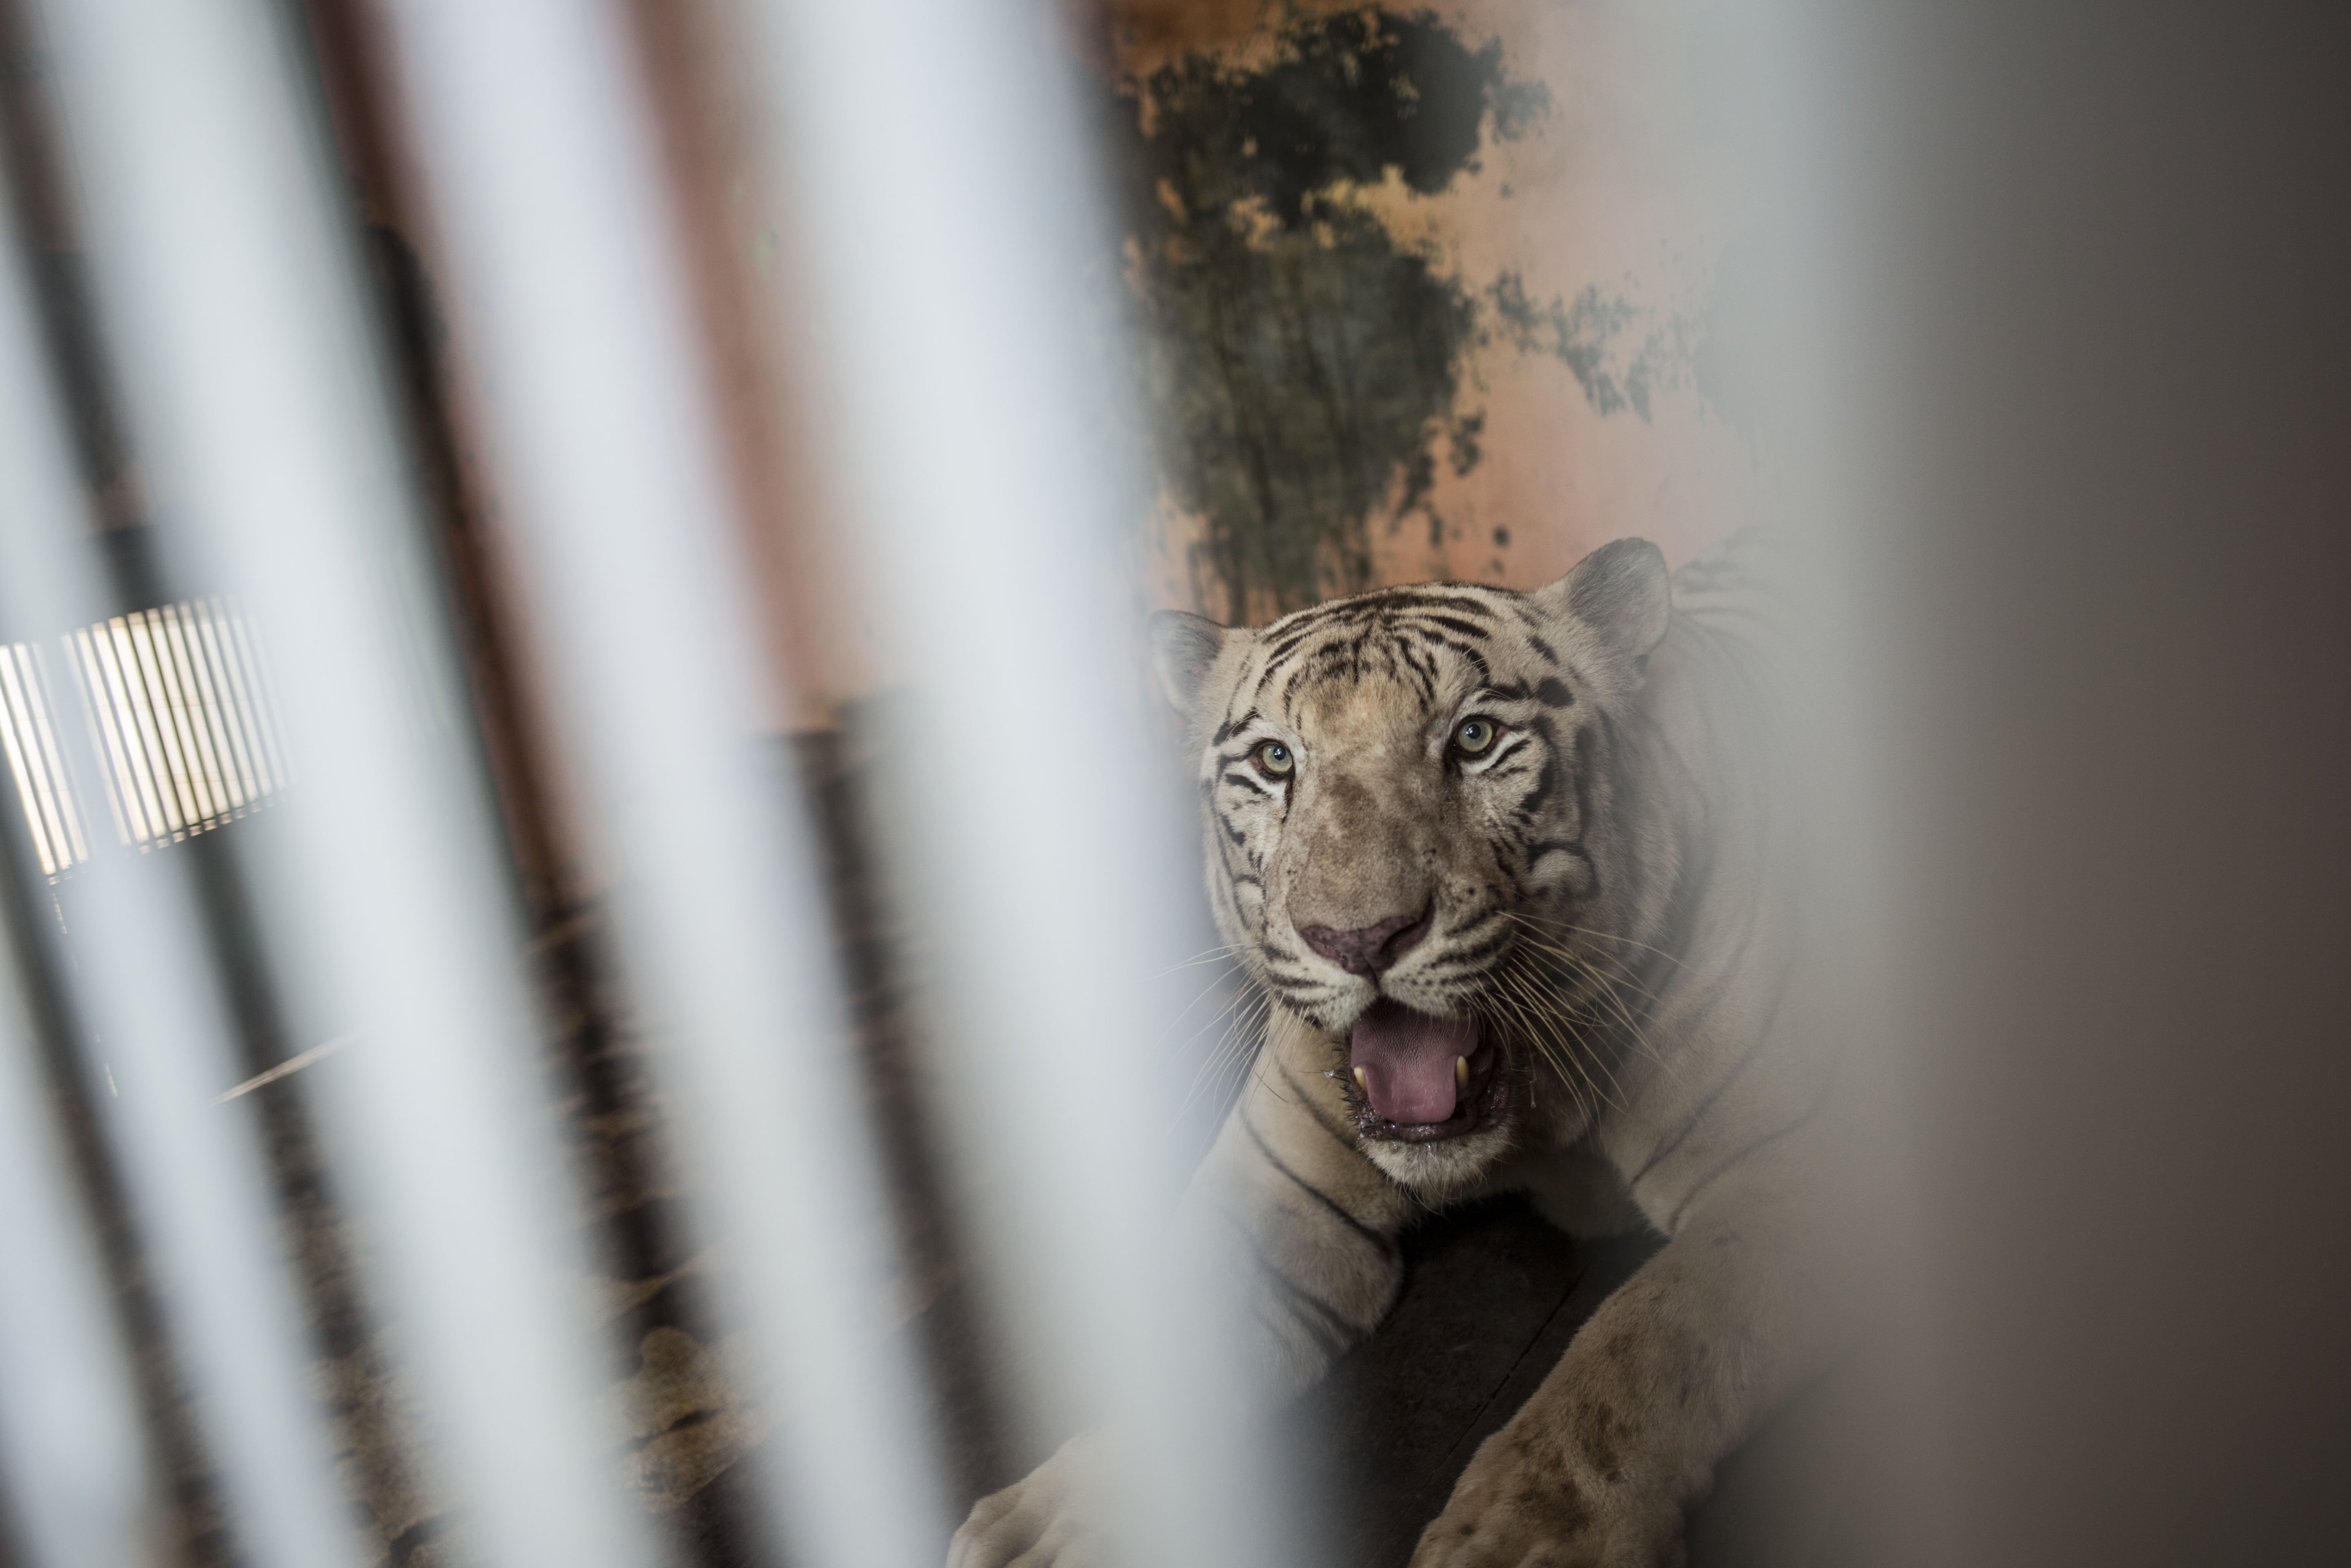 Harimau di Taman Margasatwa Ragunan, Jakarta Selatan (22/4/2020). Satwa-satwa di Taman Margasatwa Ragunan terlihat lebih tenang dan fresh sejak penutupan lokasi mulai 14 Maret untuk mencegah penyebaran virus corona COVID-19.